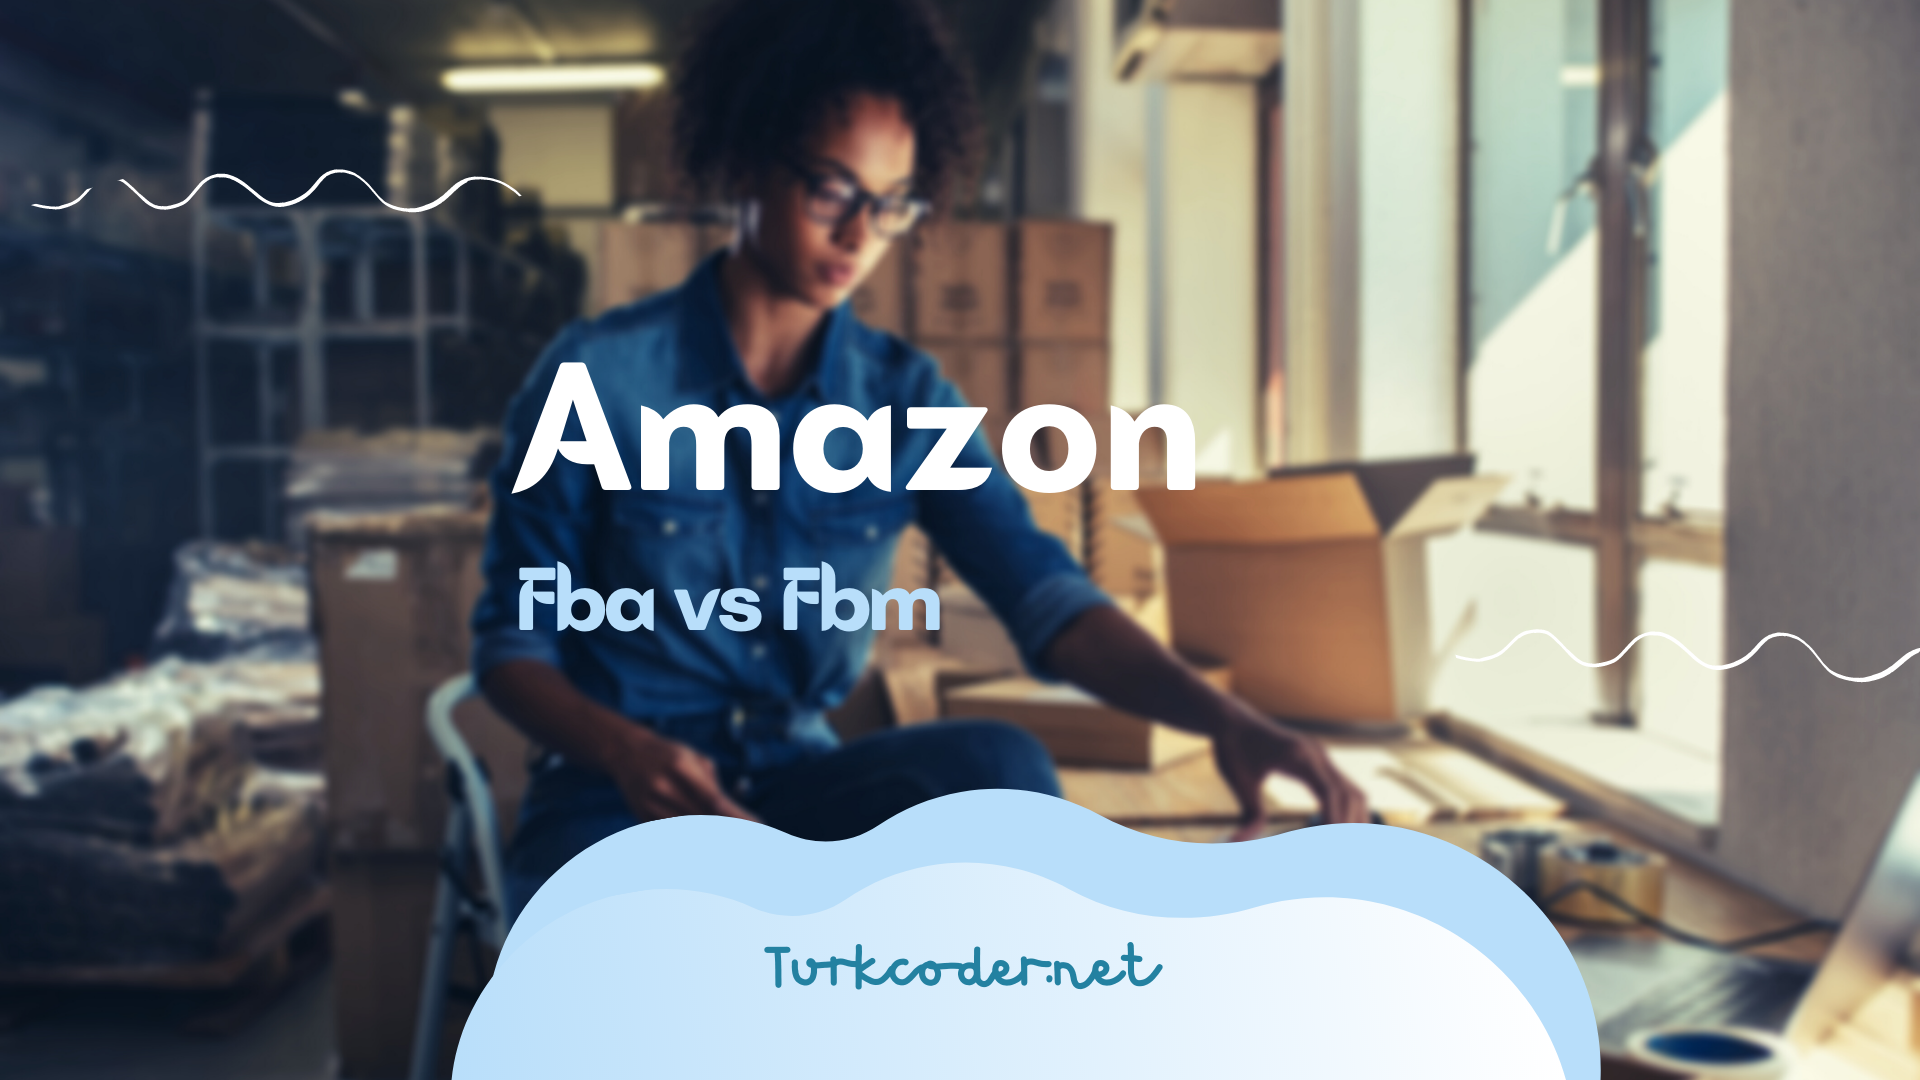 Amazon Fba vs Fbm